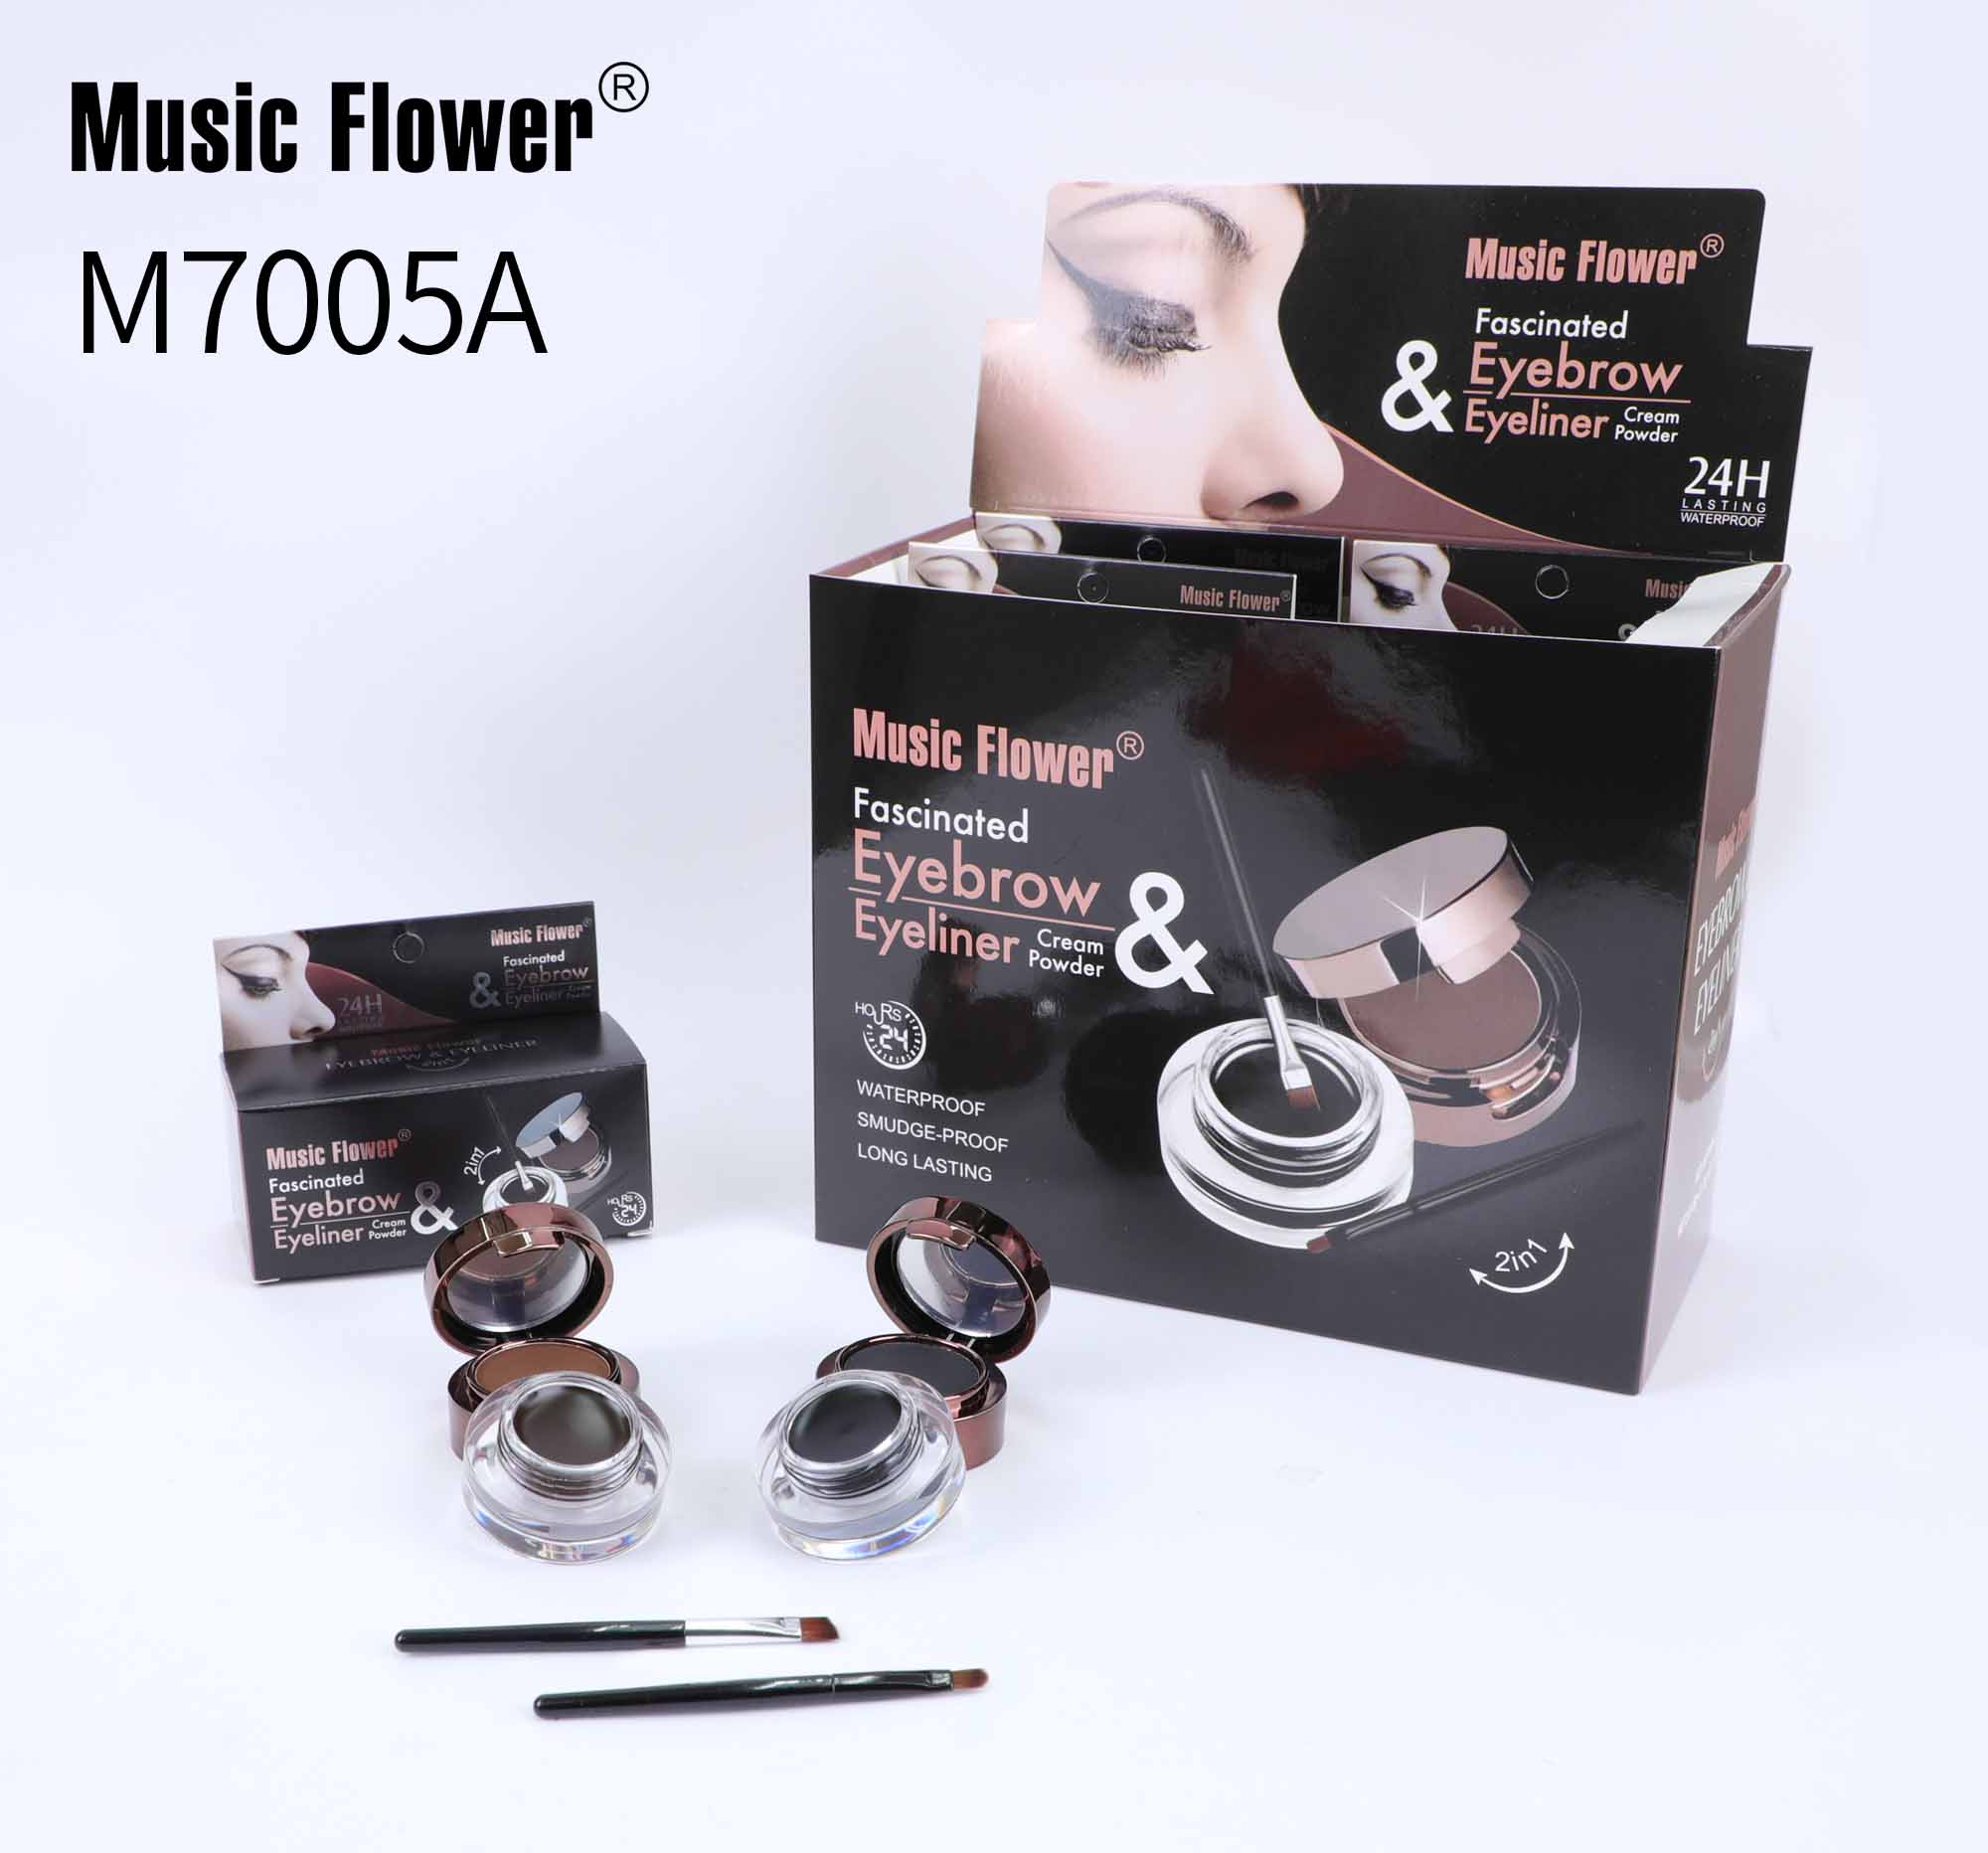 MUSIC FLOWER EYELINER GEL M700